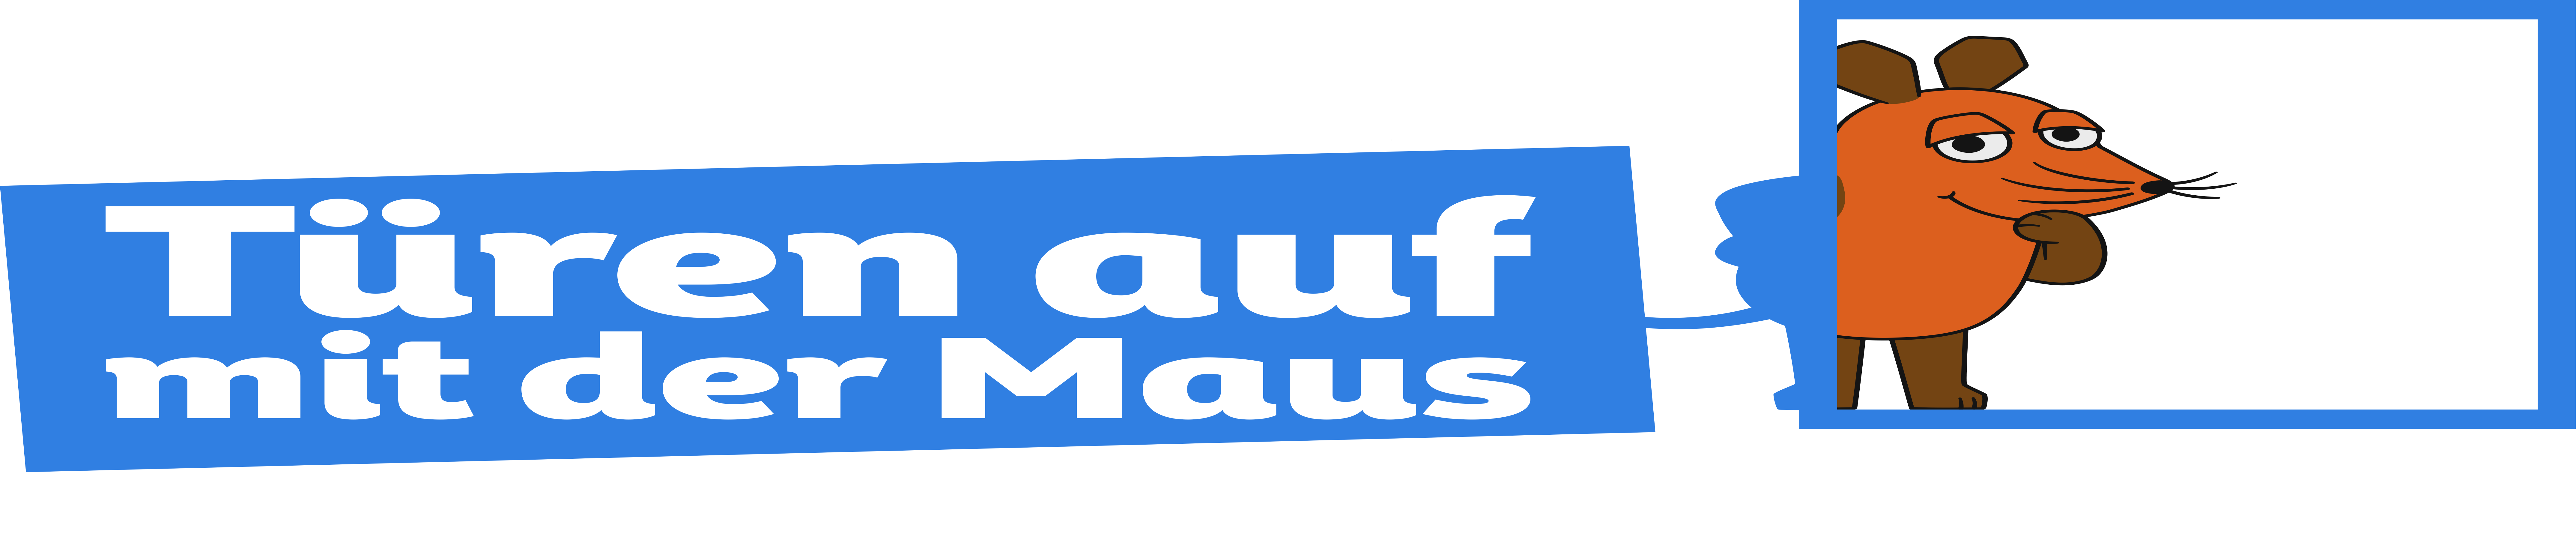 Maustag Logo Quer